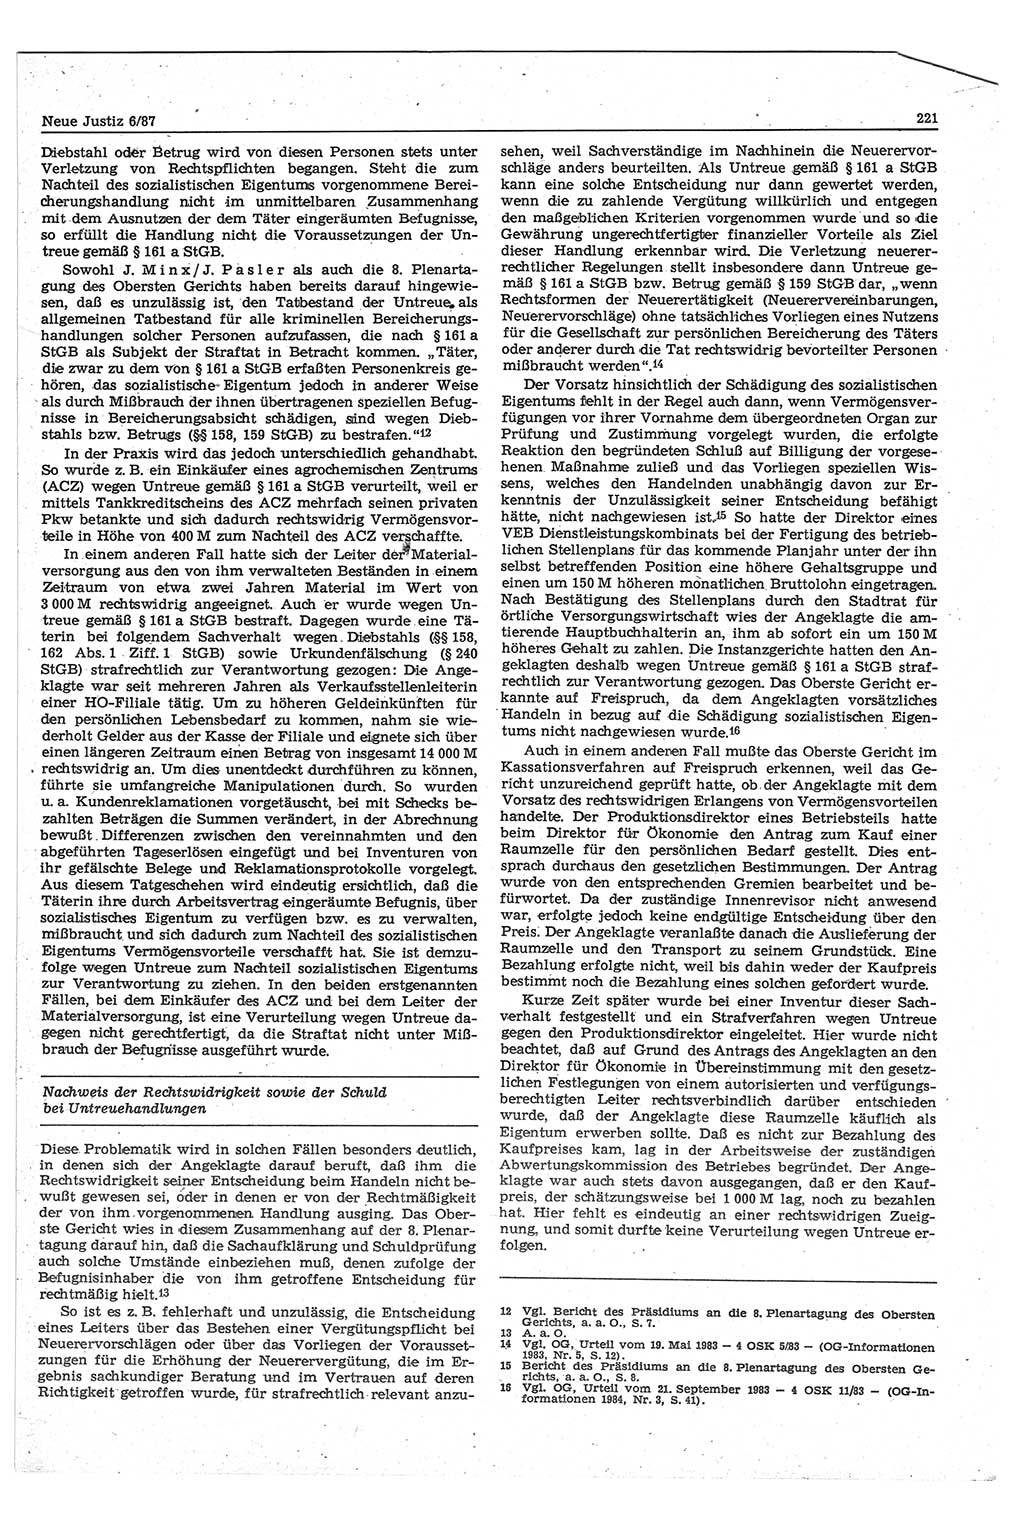 Neue Justiz (NJ), Zeitschrift für sozialistisches Recht und Gesetzlichkeit [Deutsche Demokratische Republik (DDR)], 41. Jahrgang 1987, Seite 221 (NJ DDR 1987, S. 221)